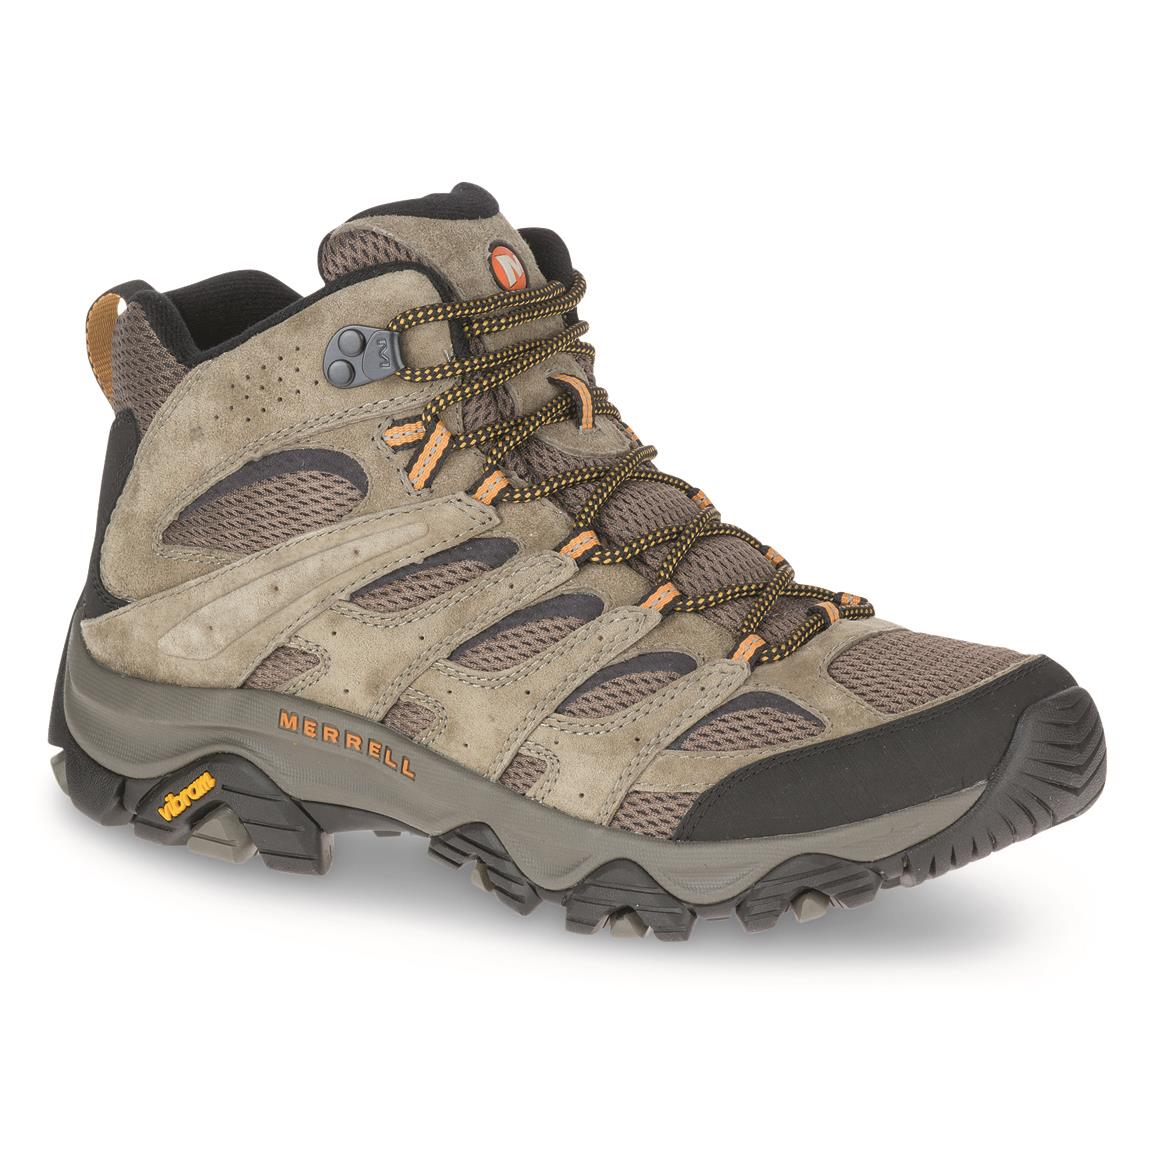 Merrell Men's Moab 3 Hiking Boots, Walnut